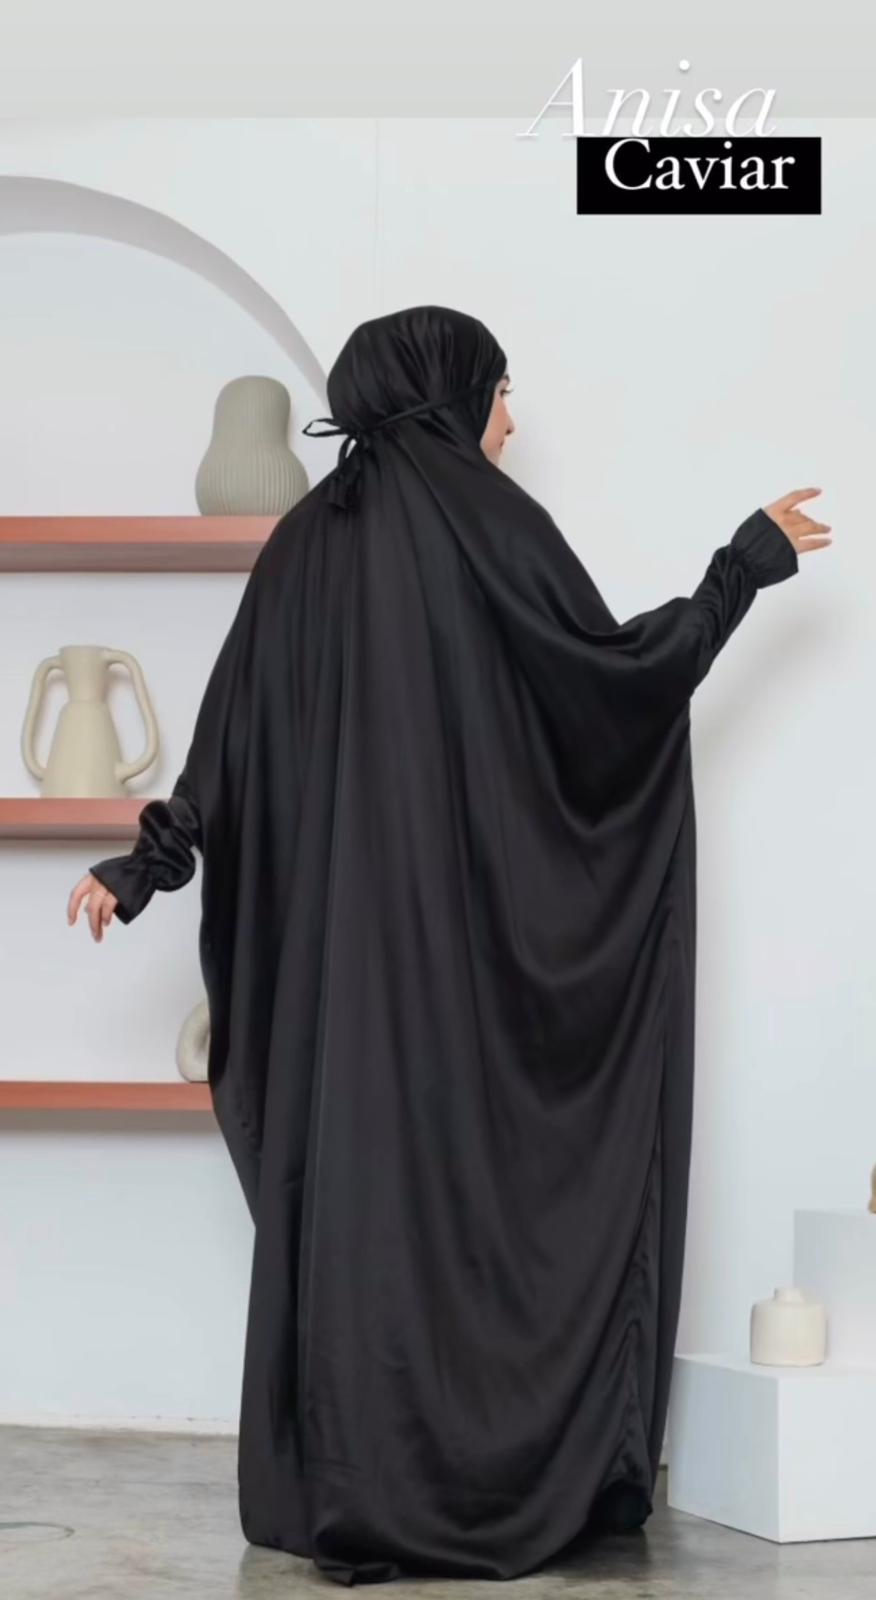 Anisa Full Length Jilbab